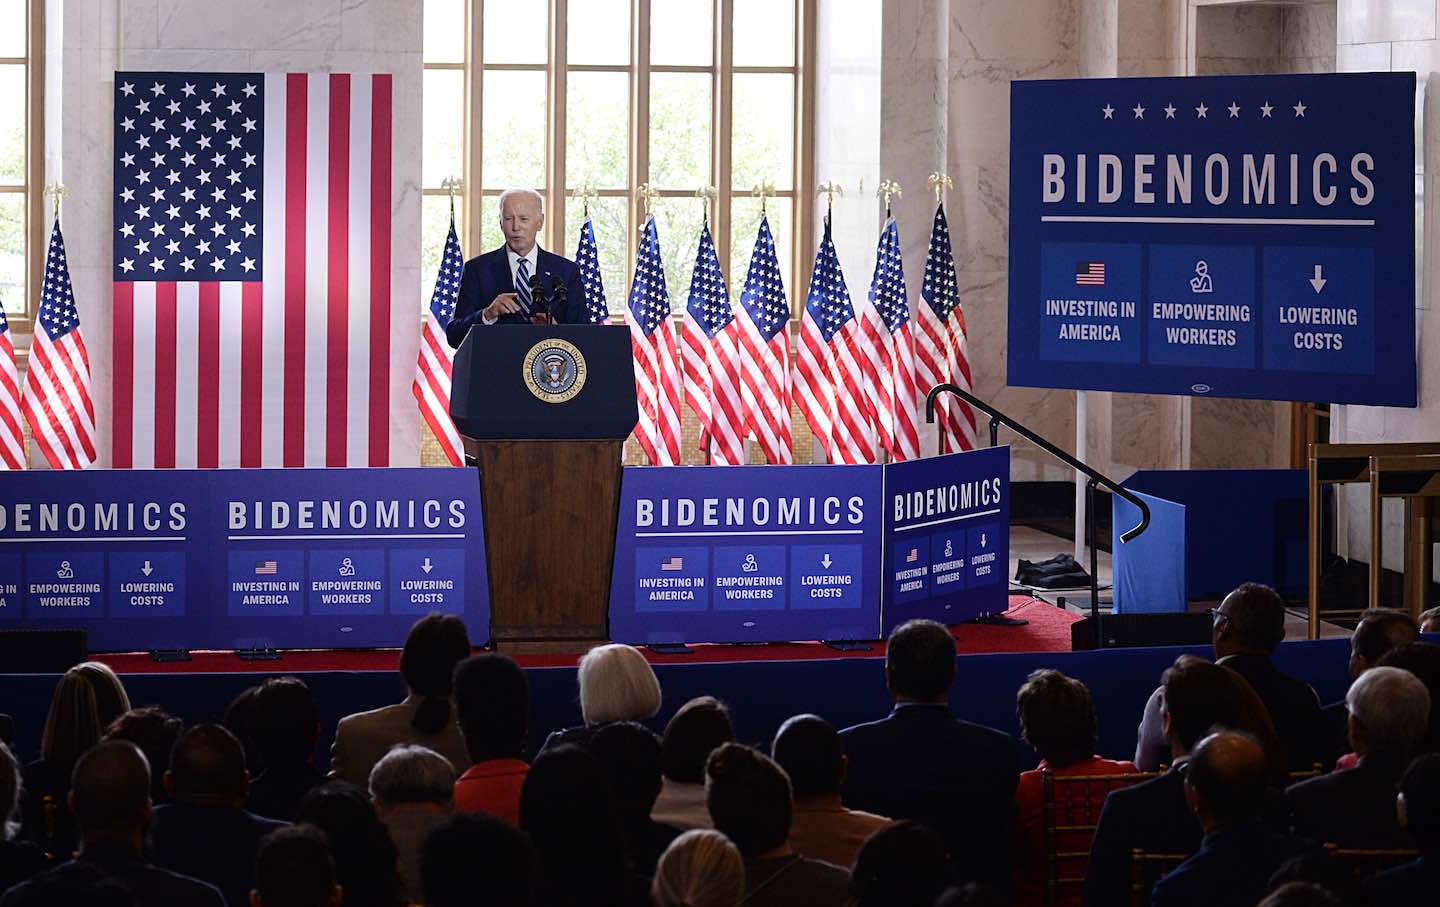 La bidenomics, l'economia secondo Joe Biden